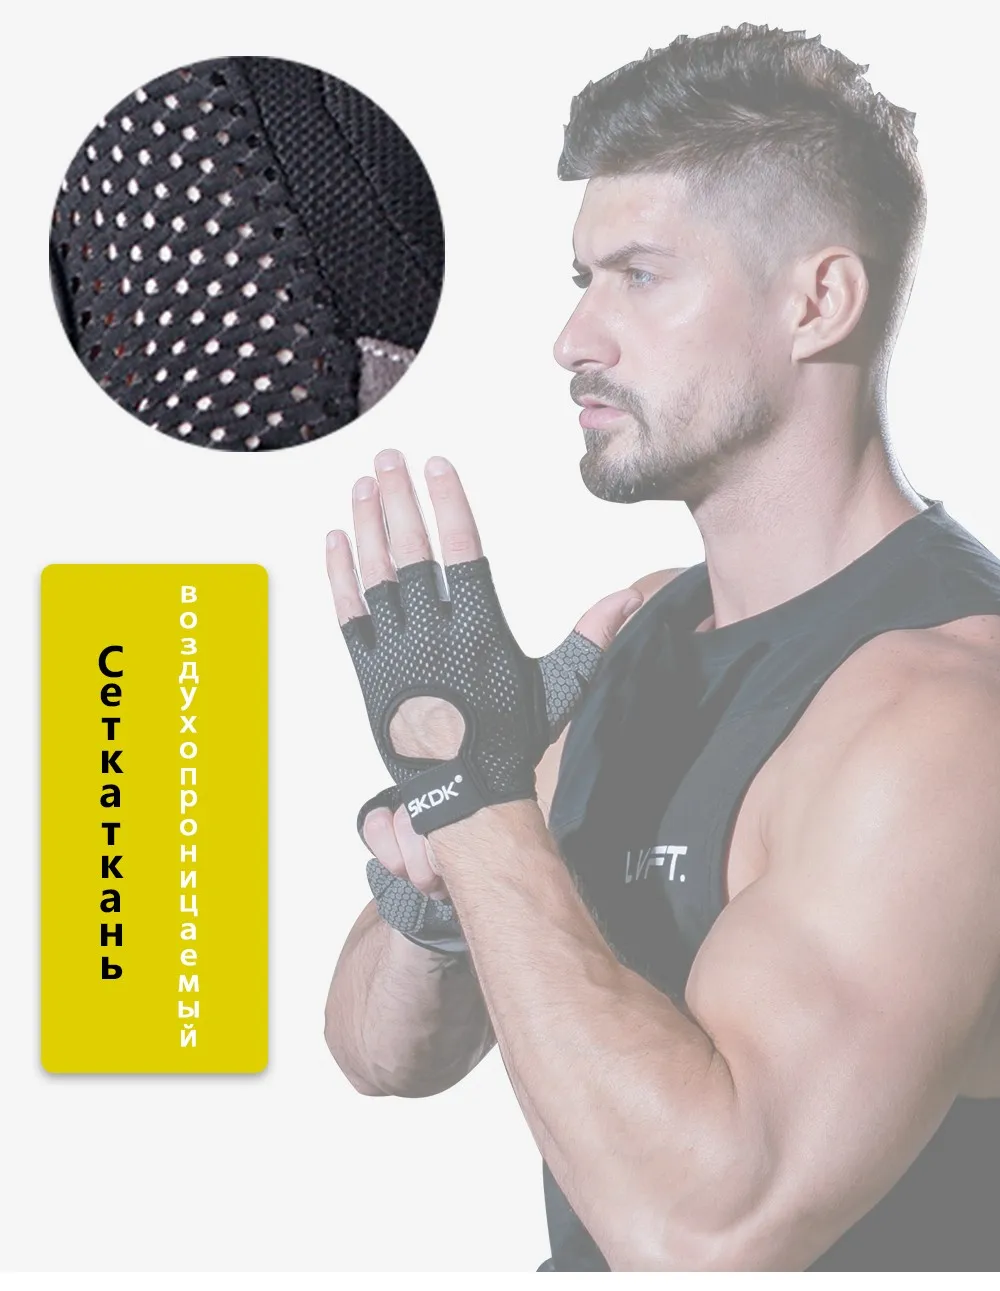 SKDK половина пальца эластичные перчатки для спортзала фитнеса силиконовые Нескользящие Дышащие Бодибилдинг тренировки спортивные перчатки Guantes Gimnasio